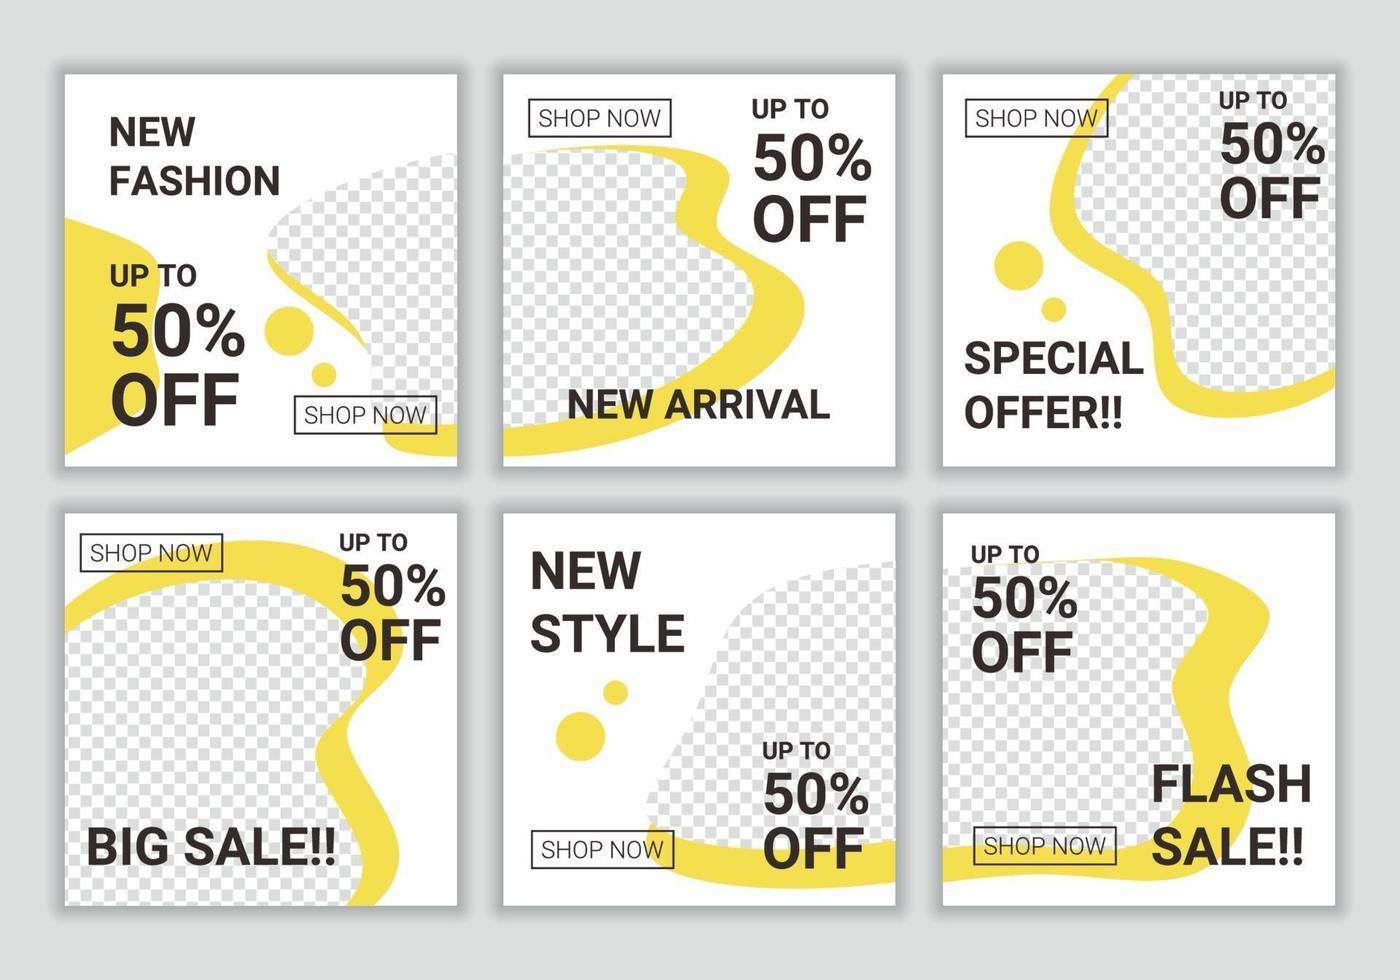 uppsättning redigerbar minimal abstrakt fyrkantig banner mall design för sociala medier feed post. mode försäljning digital marknadsföring. vit och gul bakgrundsfärgformillustration vektor